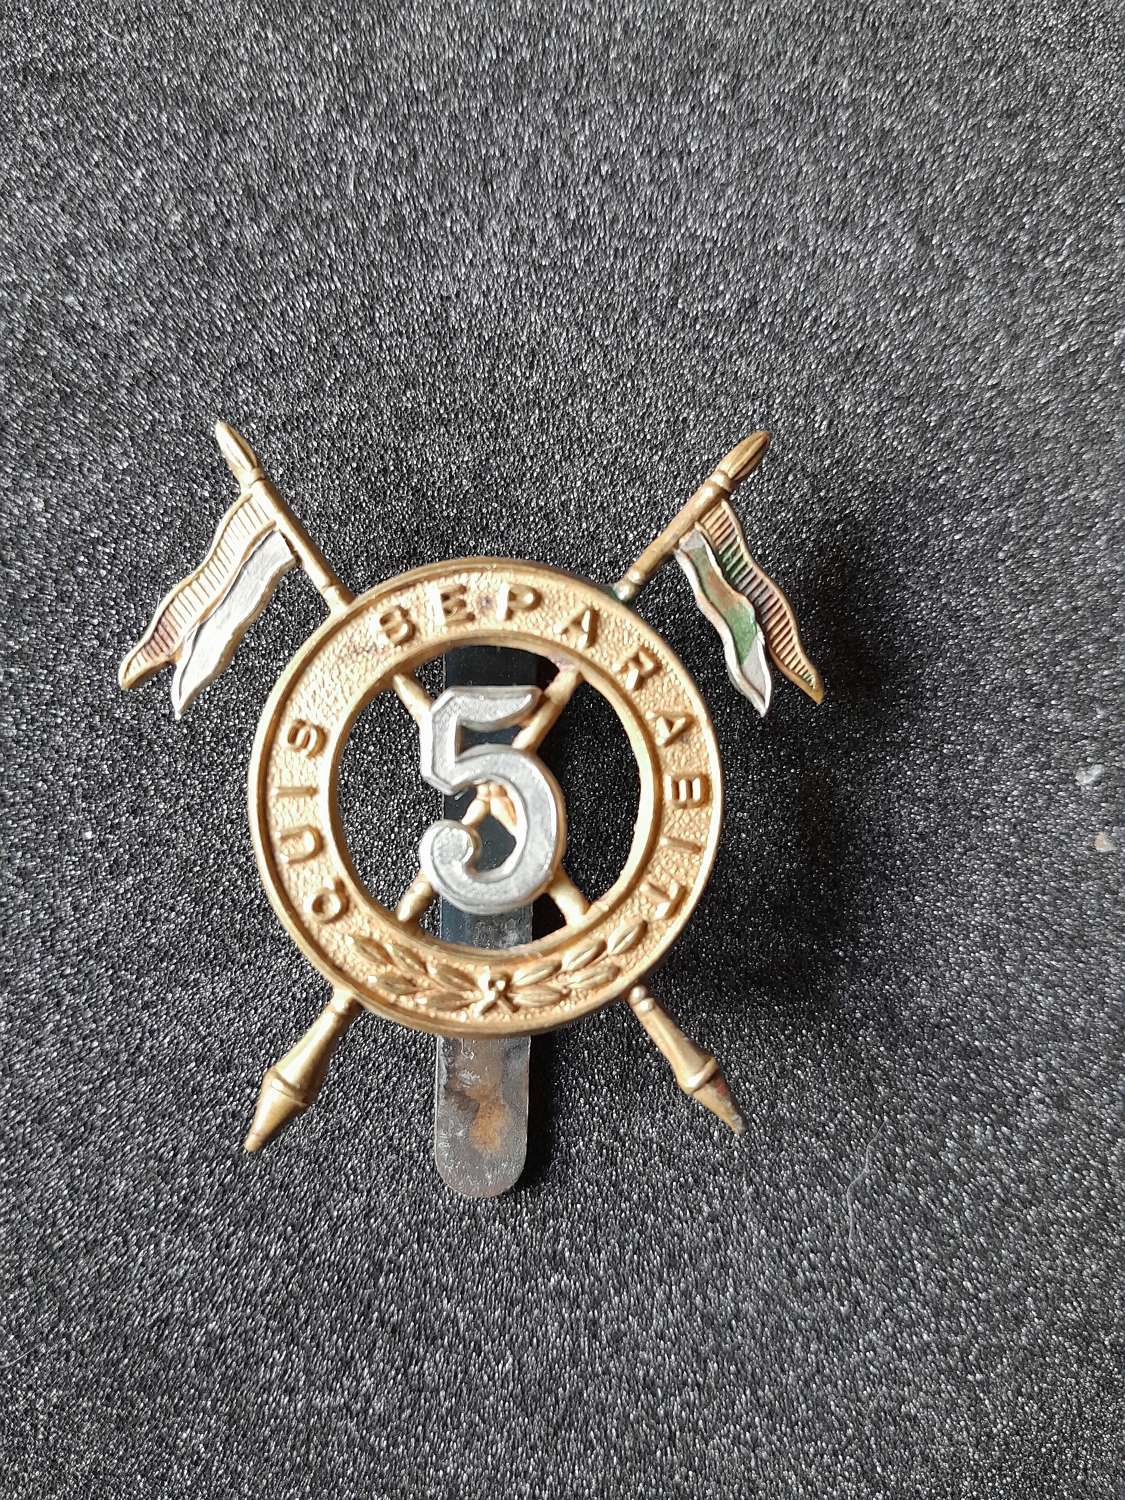 Original WWI 5th Royal Irish Lancers Cap Badge